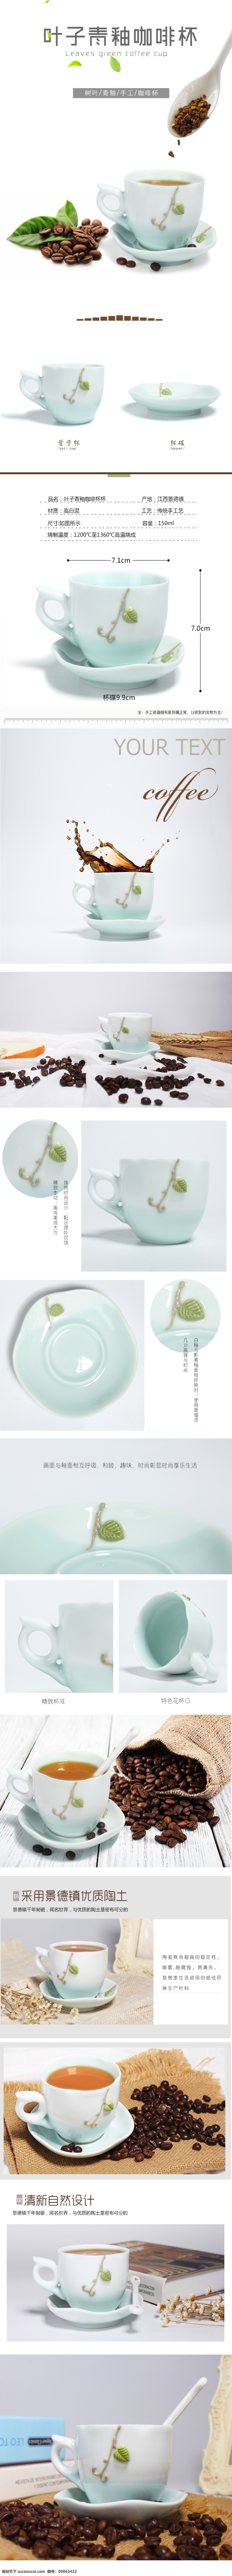 陶瓷 咖啡杯 详情 模板 淘宝 天猫 叶子 白色